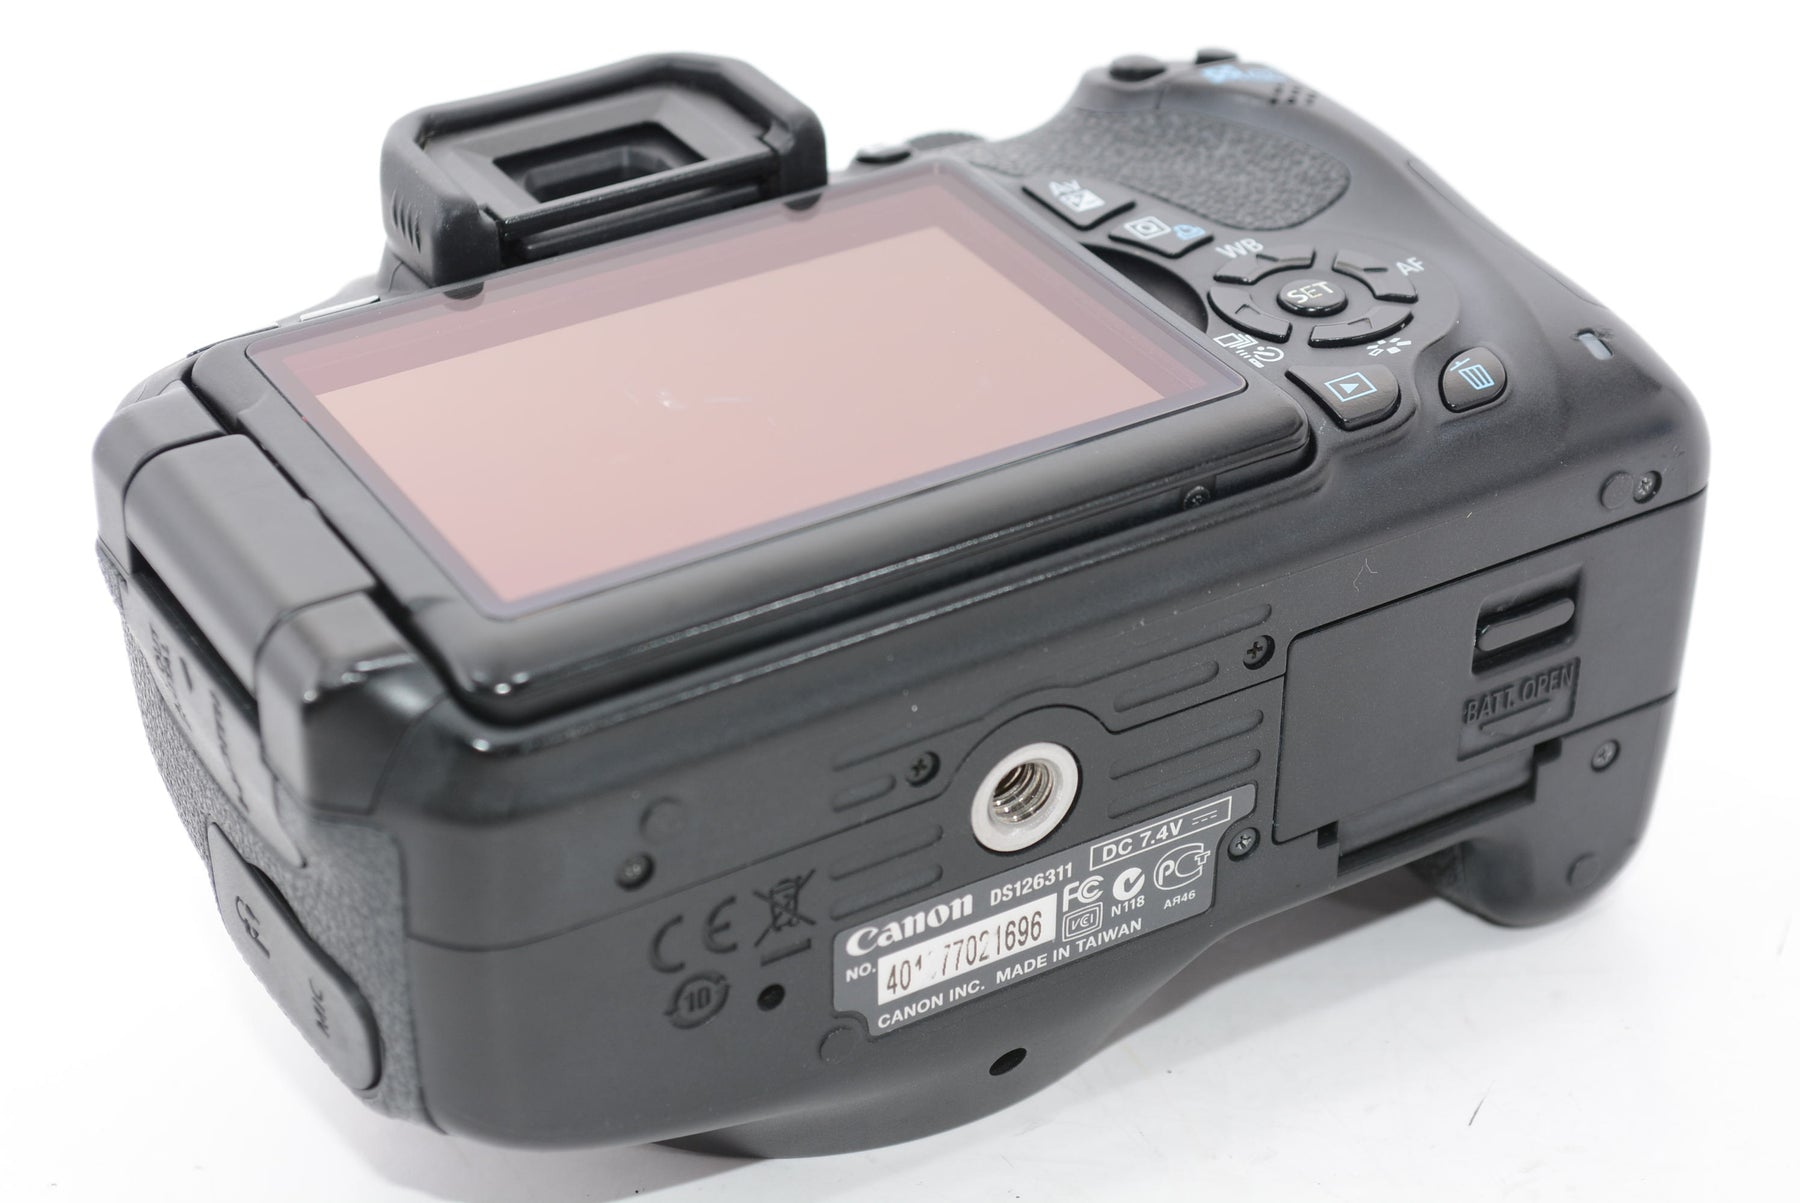 【外観並級】Canon デジタル一眼レフカメラ EOS Kiss X5 レンズキット EF-S18-55mm F3.5-5.6 IS II付属 KISSX5-1855IS2LK